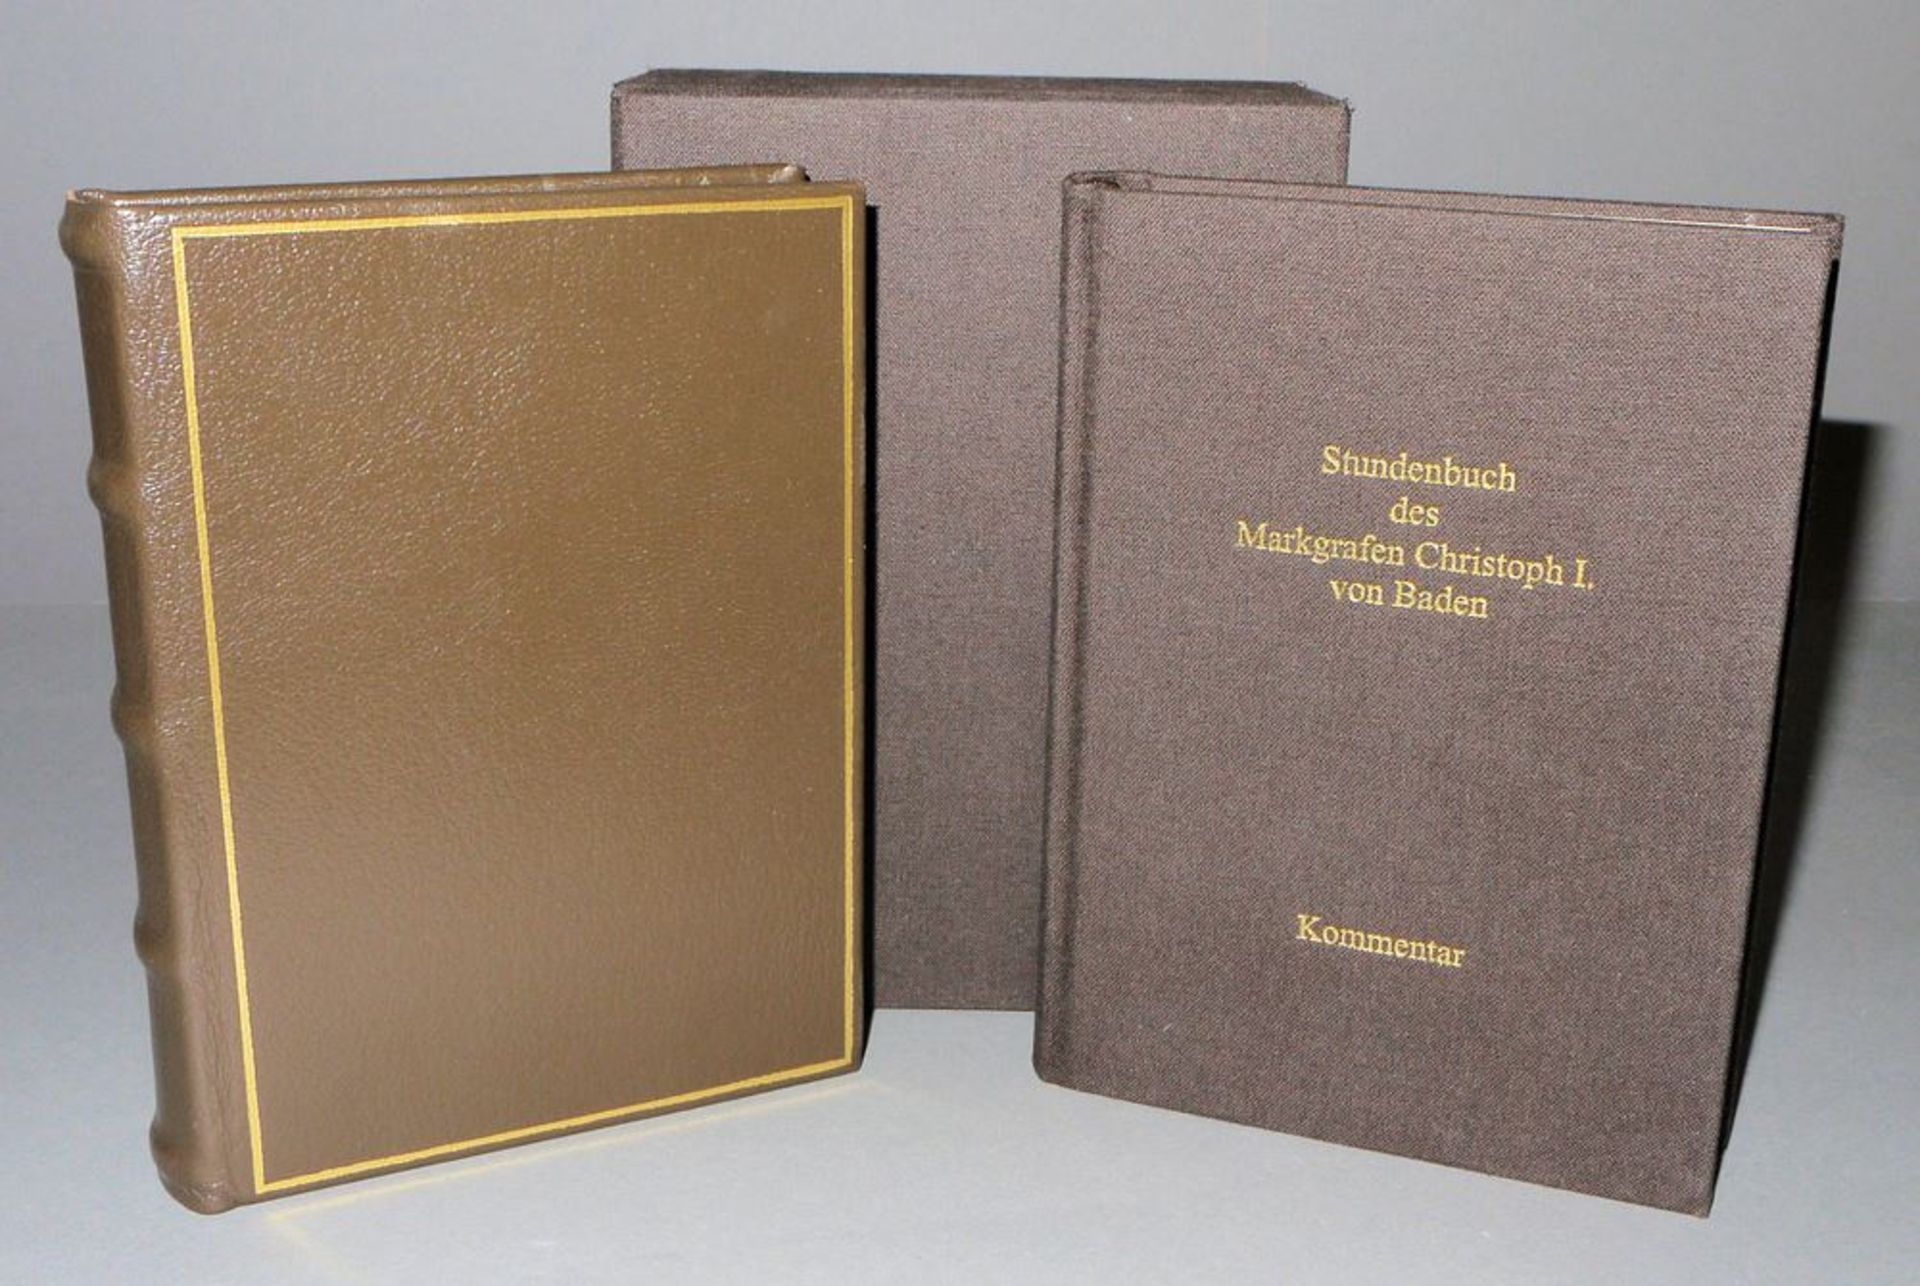 Stundenbuch des Markgrafen Christoph I. von Baden, Codex Durlach I der Badische